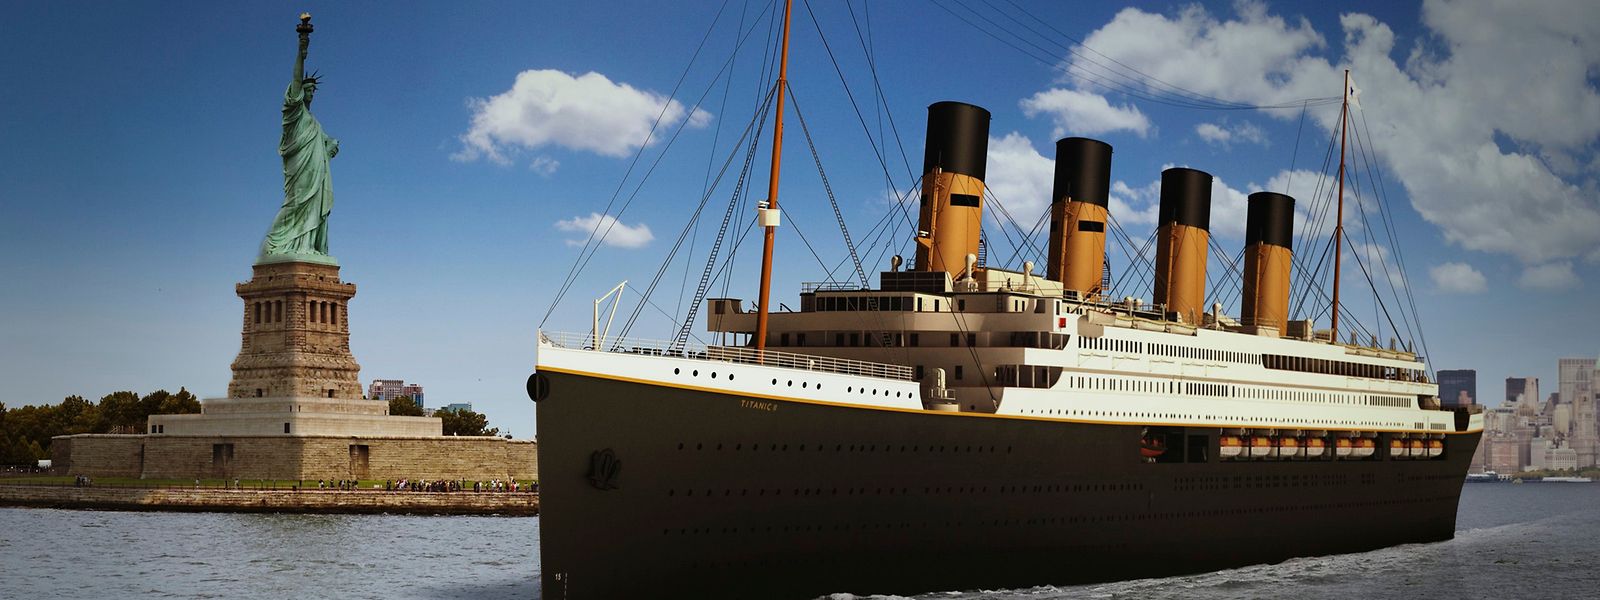 Schon länger plant der Australier Clive Palmer den Bau der Titanic II. Im Jahr 2022 könnte das Schiff nun endlich seine Jungfernfahrt antreten.